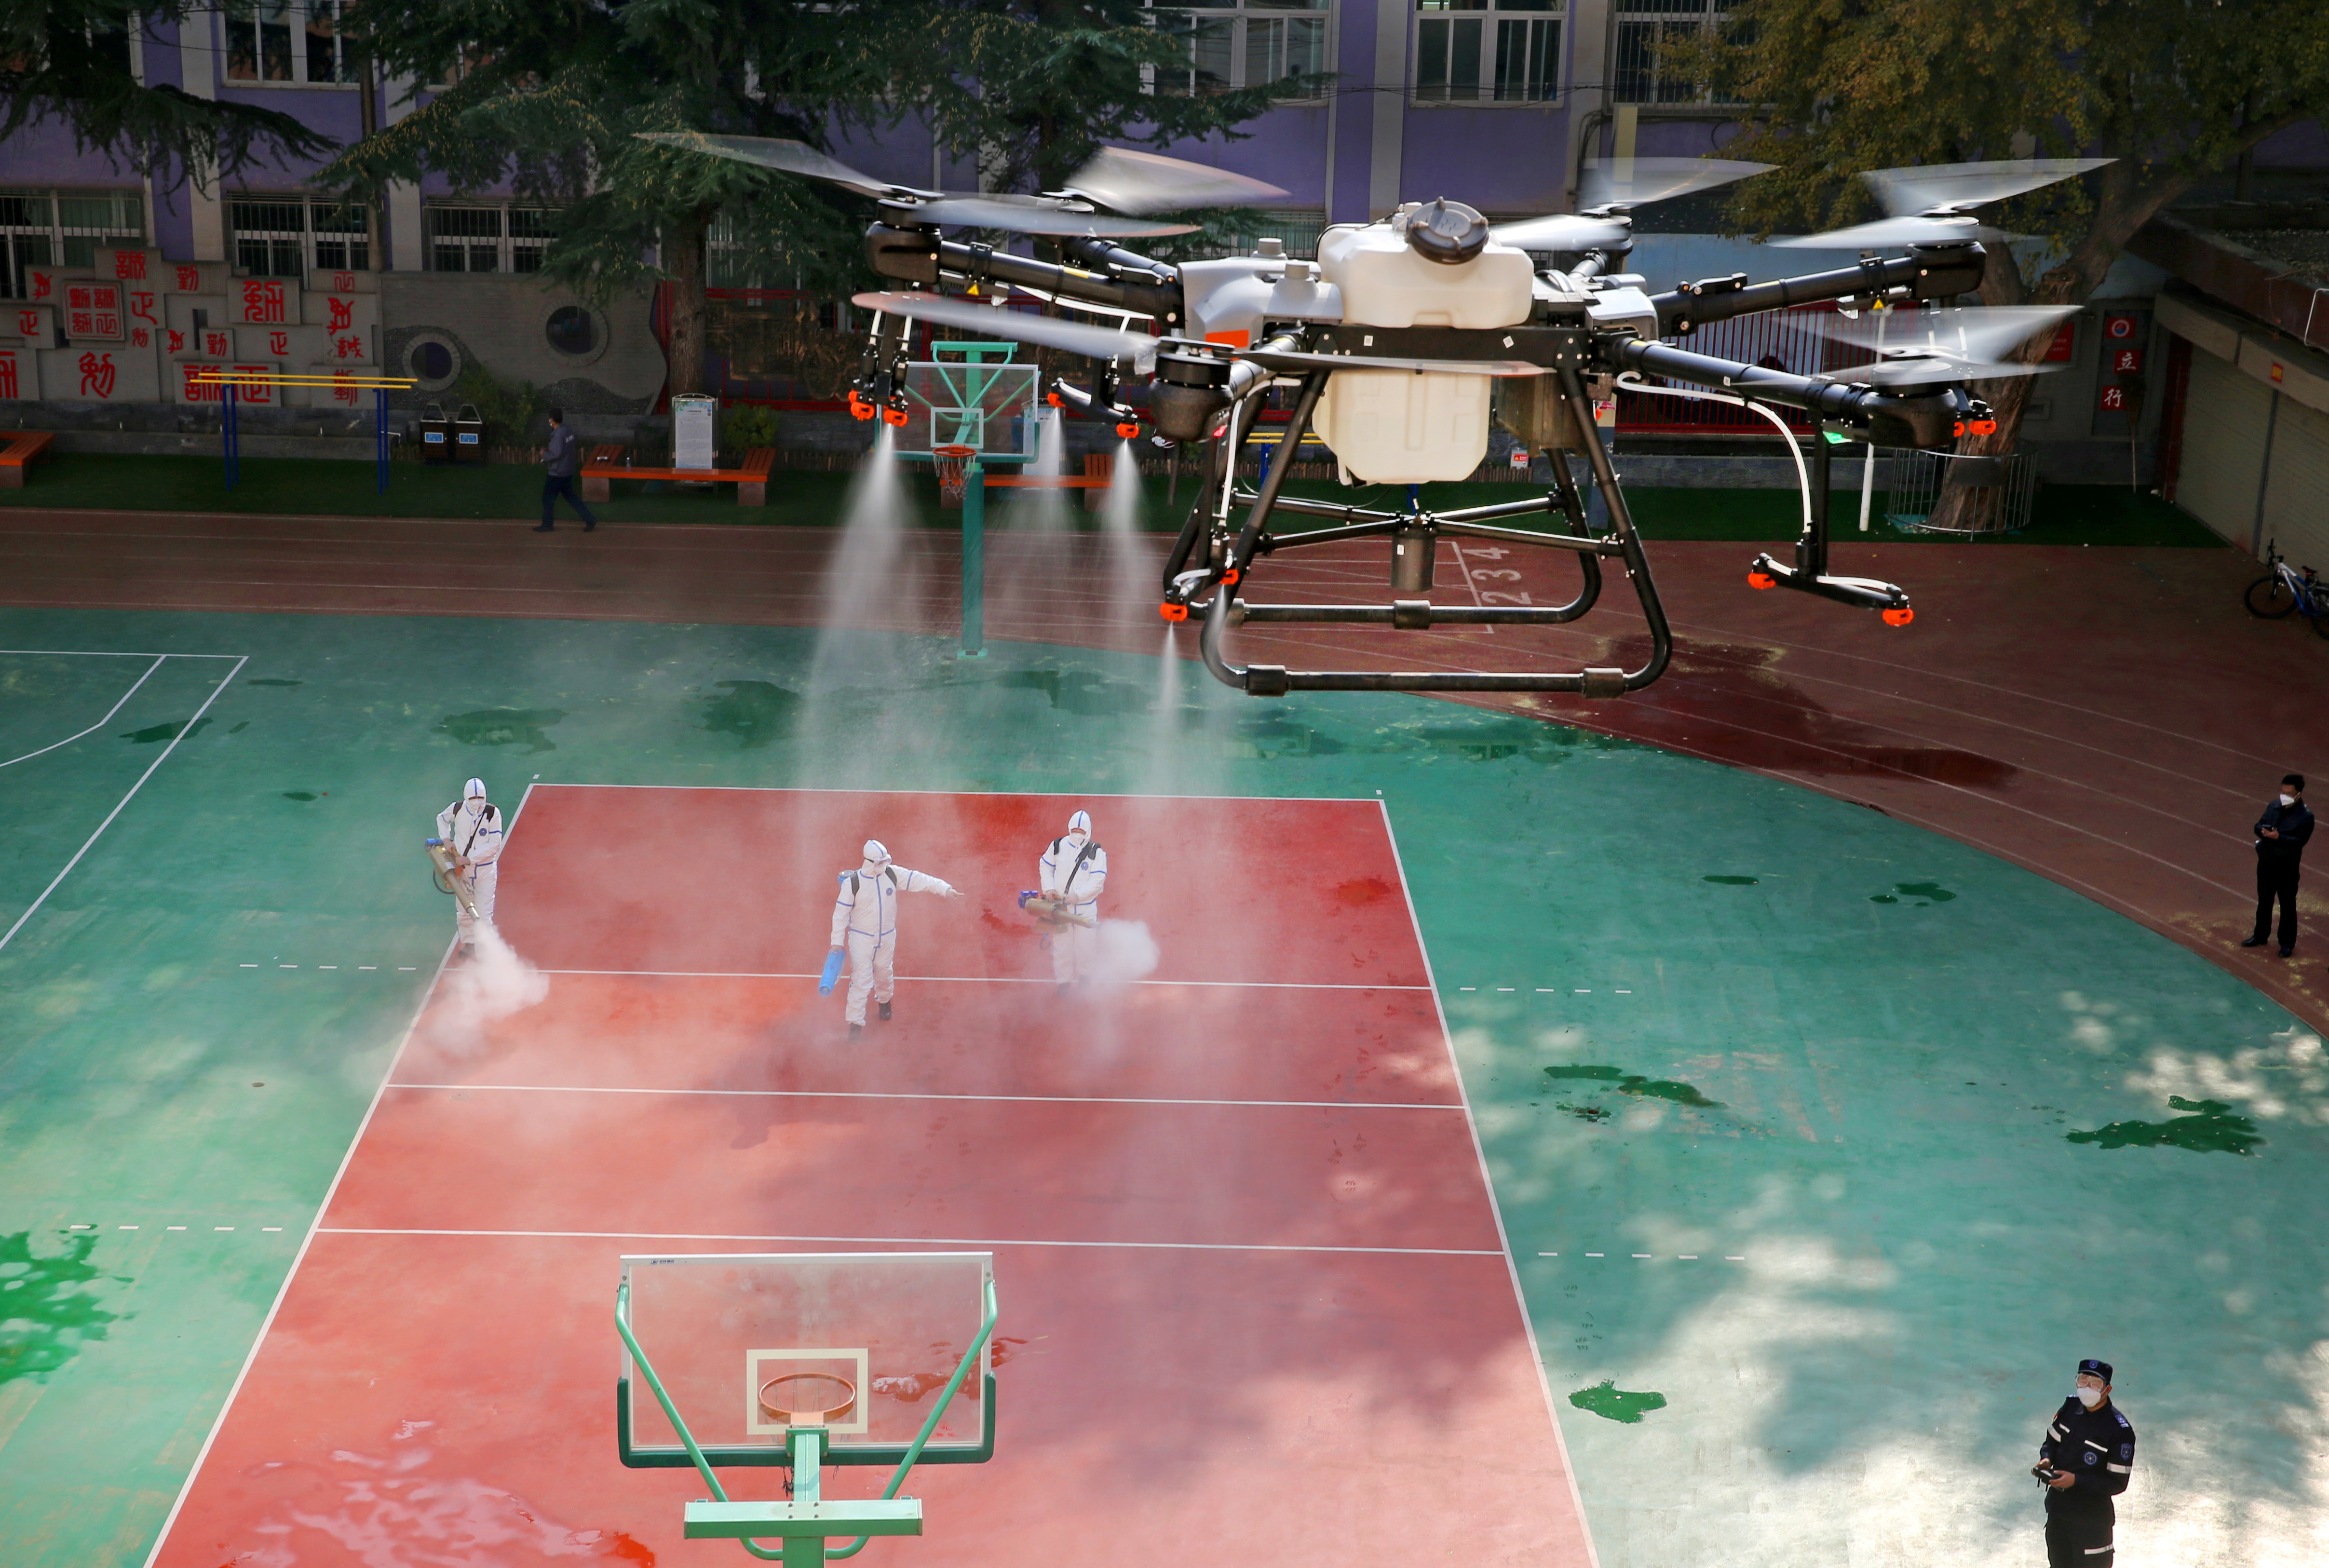 Un dron rocía desinfectante en escuela después de casos locales de covid en Lanzhou. La estrategia de "cero COVID" de China podría volverse cada vez más insostenible frente a la variante ómicron  (China Daily via REUTERS)